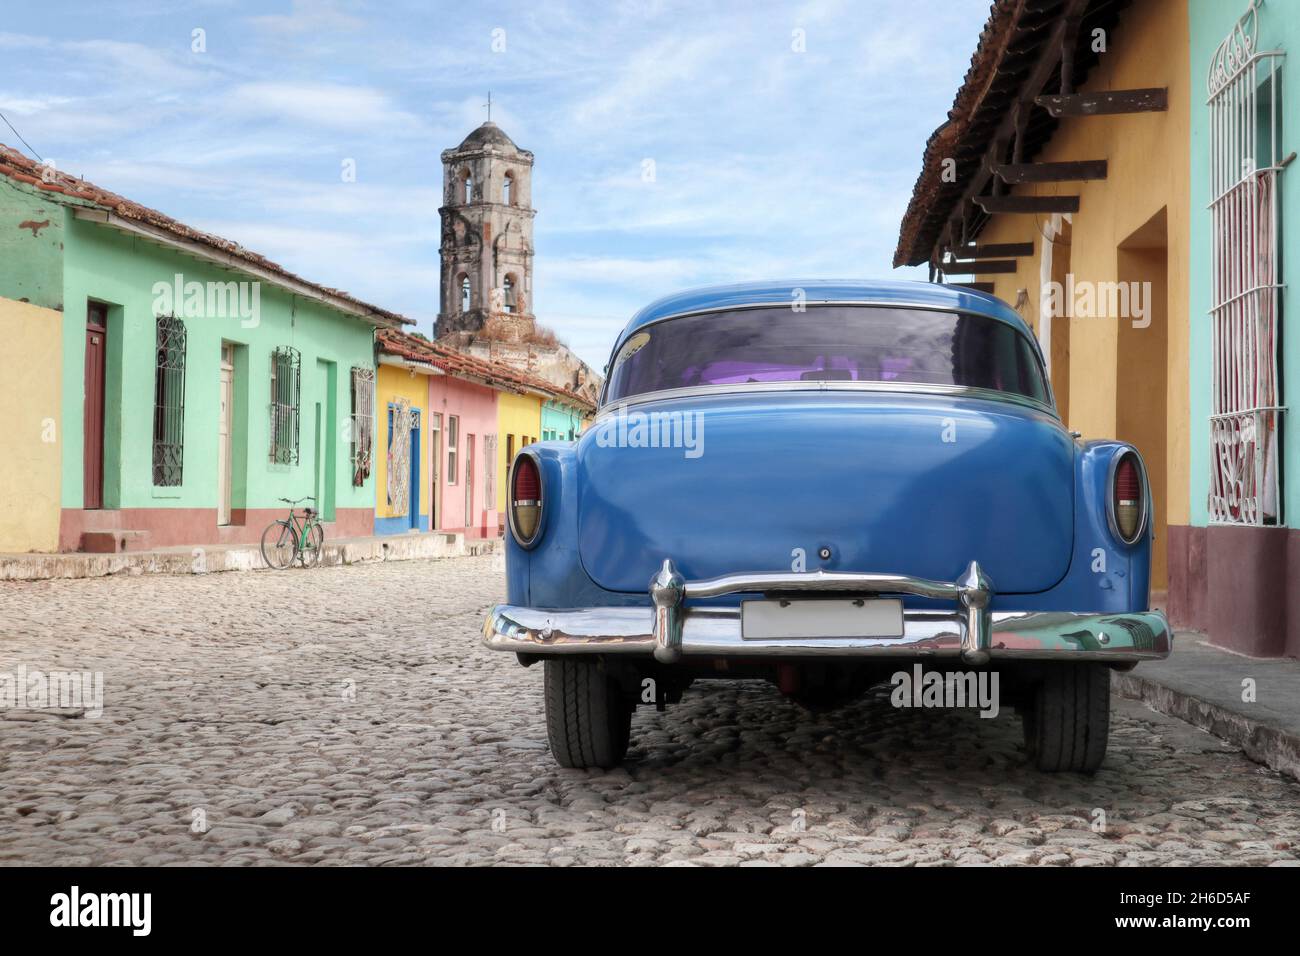 Une vieille voiture américaine dans une ville cubaine colorée Banque D'Images